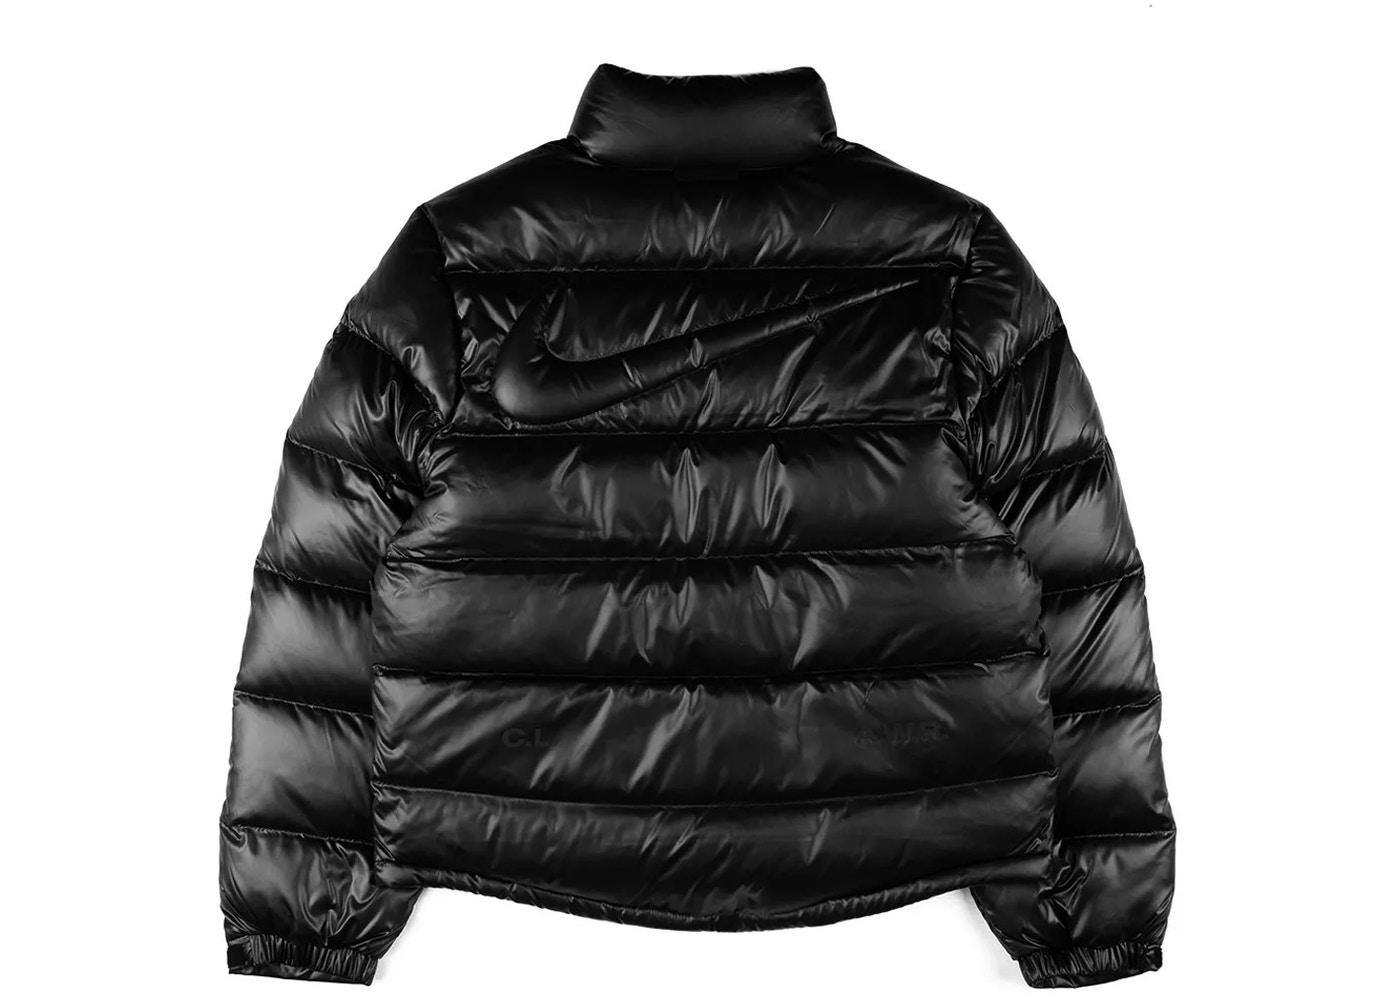 Nike x Drake NOCTA Puffer Jacket Black by NIKE